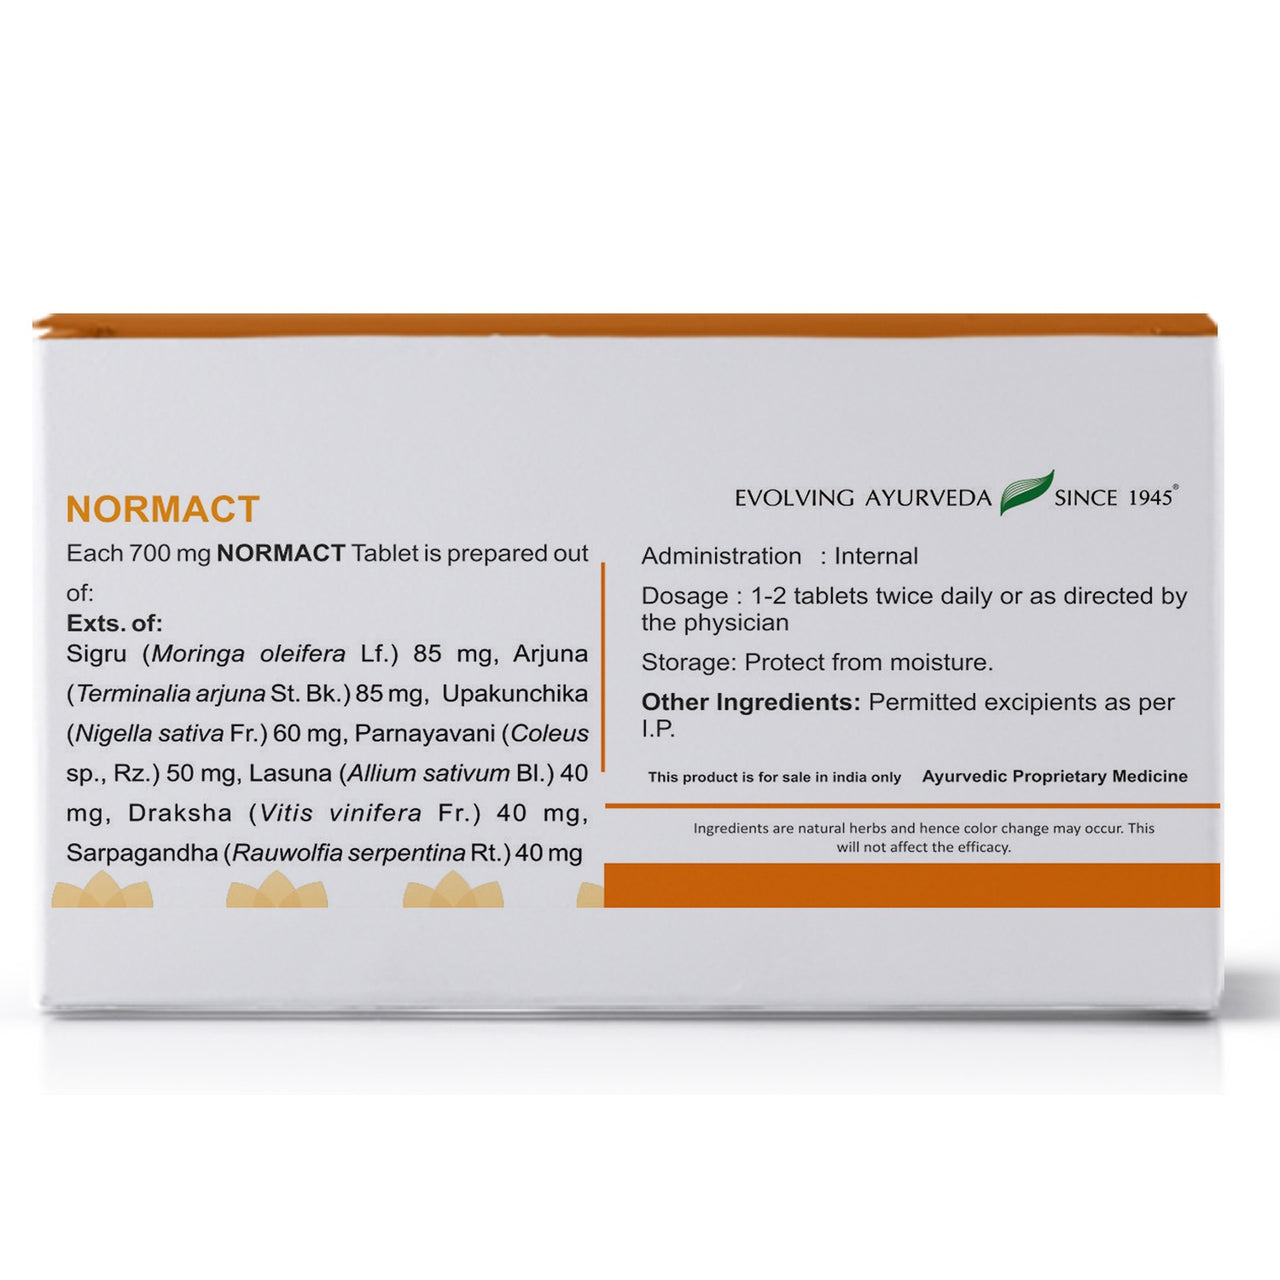 Kerala Ayurveda Normact Tablets - Distacart